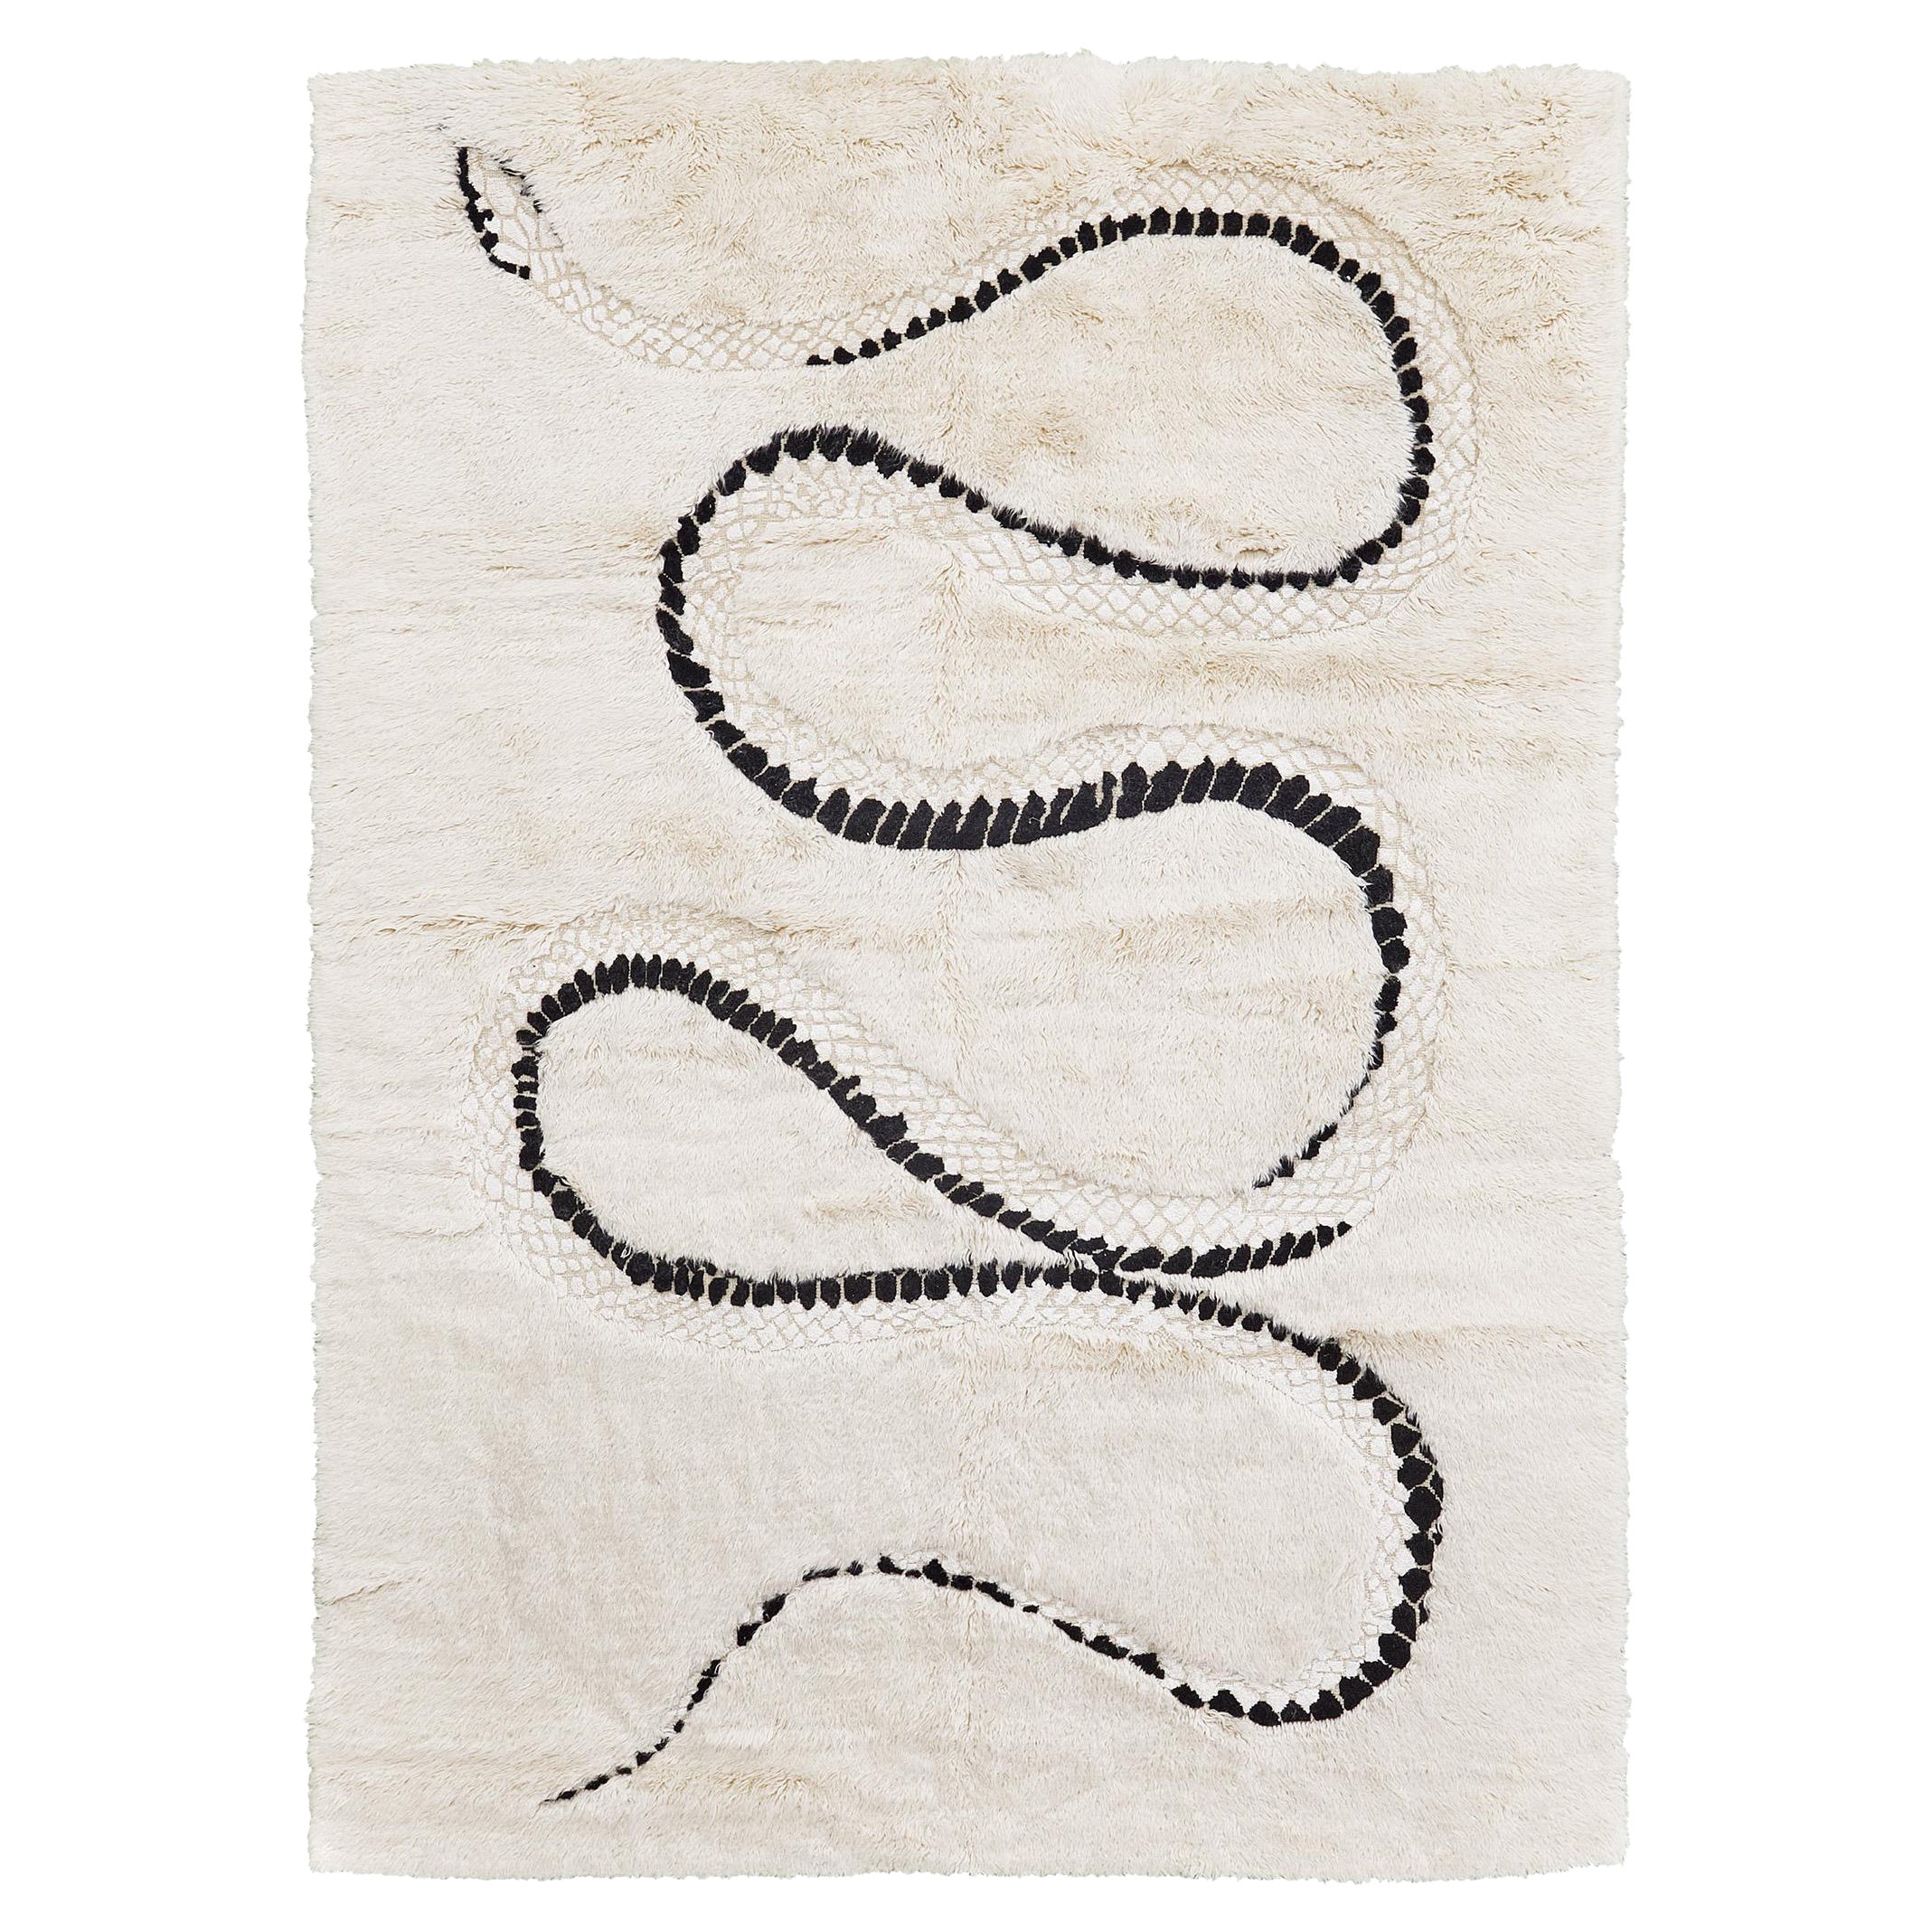 Mehraban Year of the Snake (Année du serpent) par Liesel Plambeck